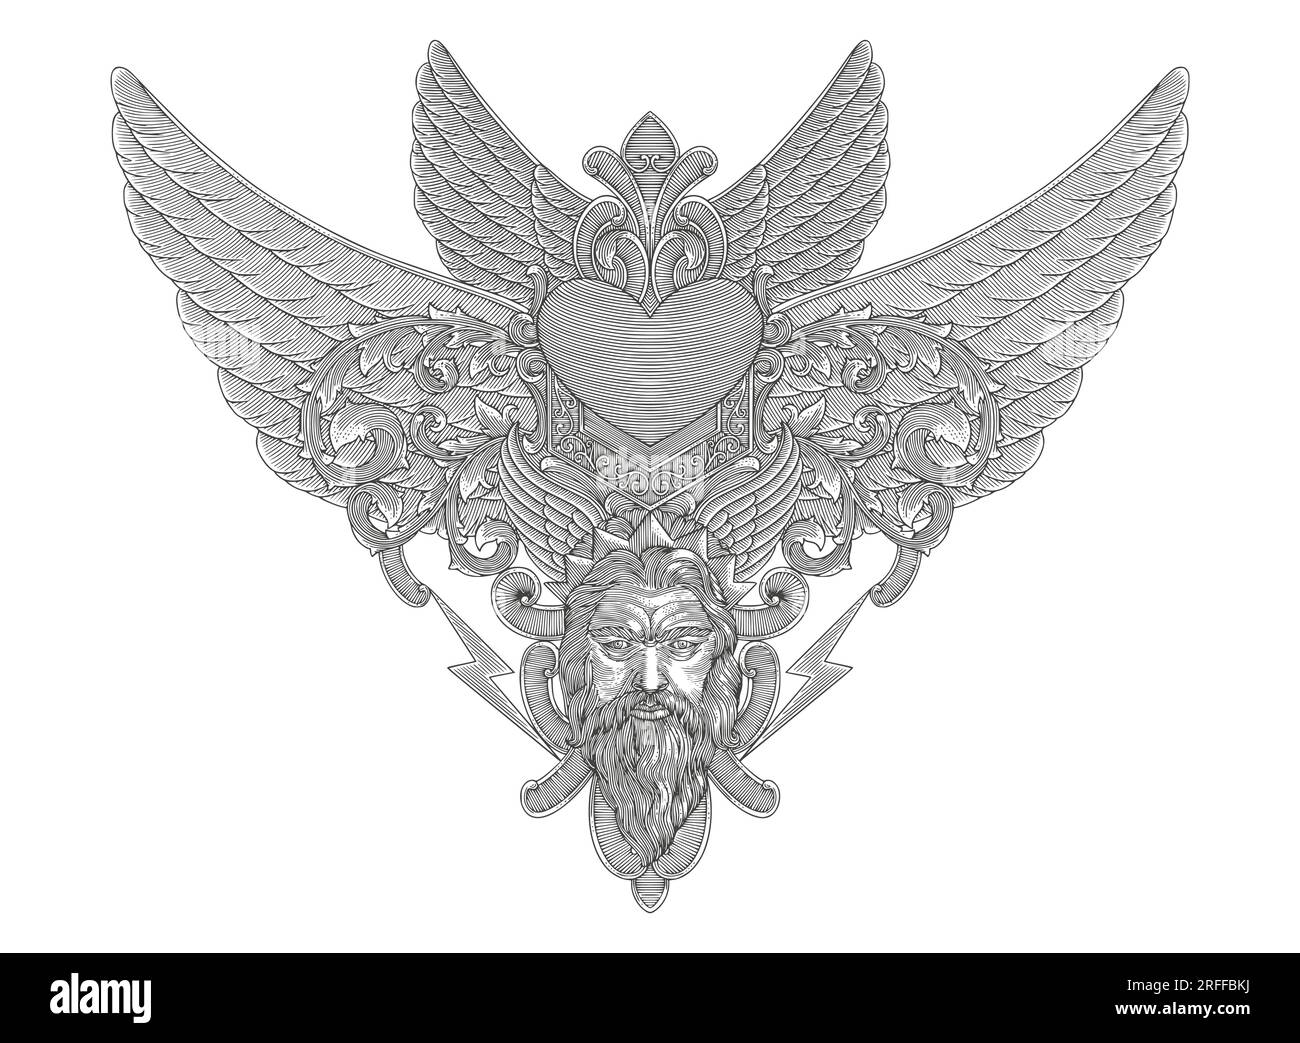 Herz mit Flügeln, zeus- und Blumenverzierung, Gravurstil im Vintage-Stil, Vektorzeichnung im antiken Design Stock Vektor